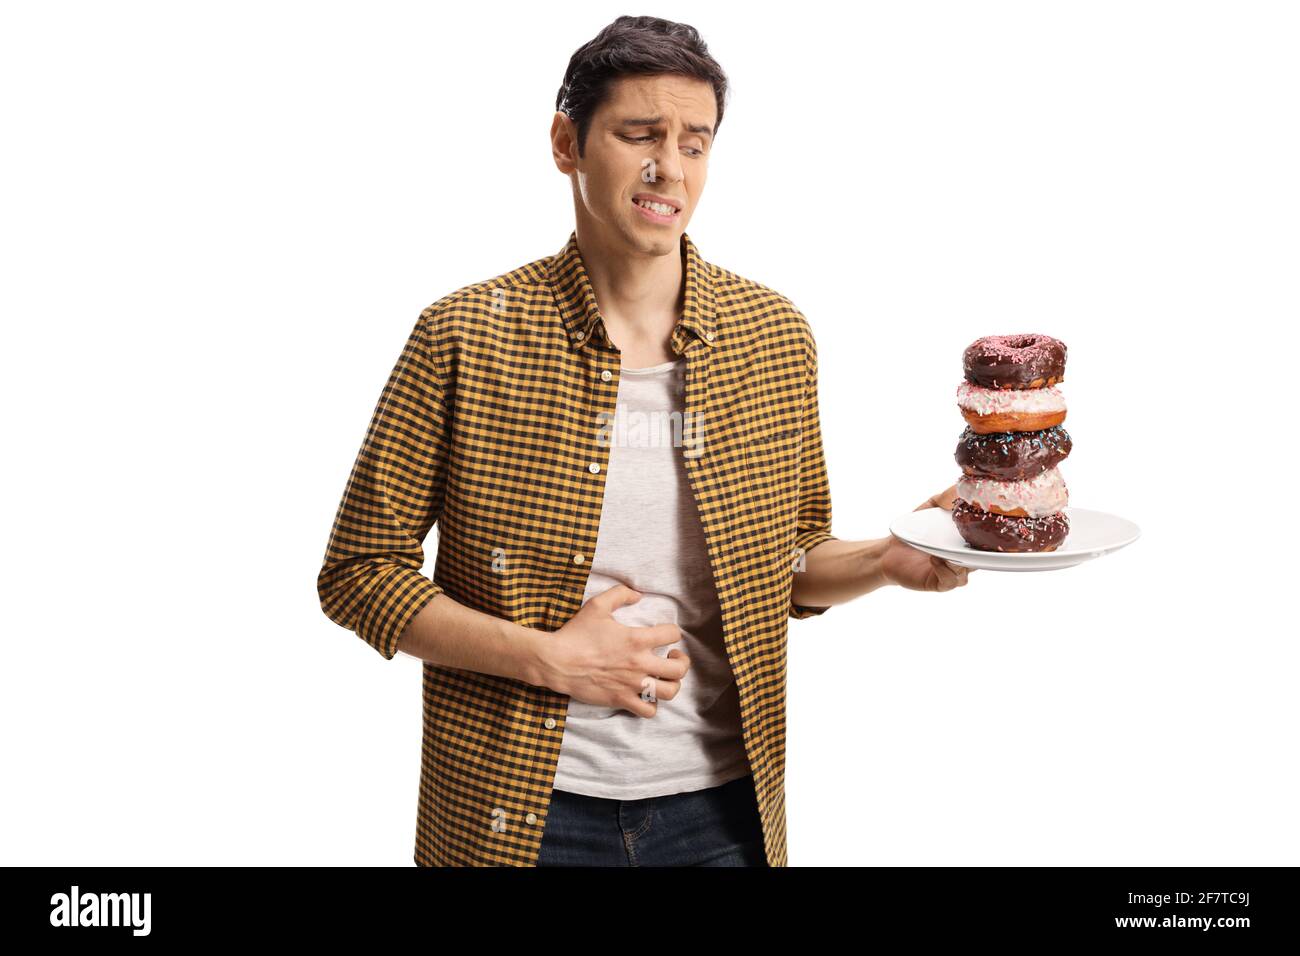 Junger Mann mit Magenschmerzen, der einen Teller hält Donuts isoliert auf weißem Hintergrund Stockfoto